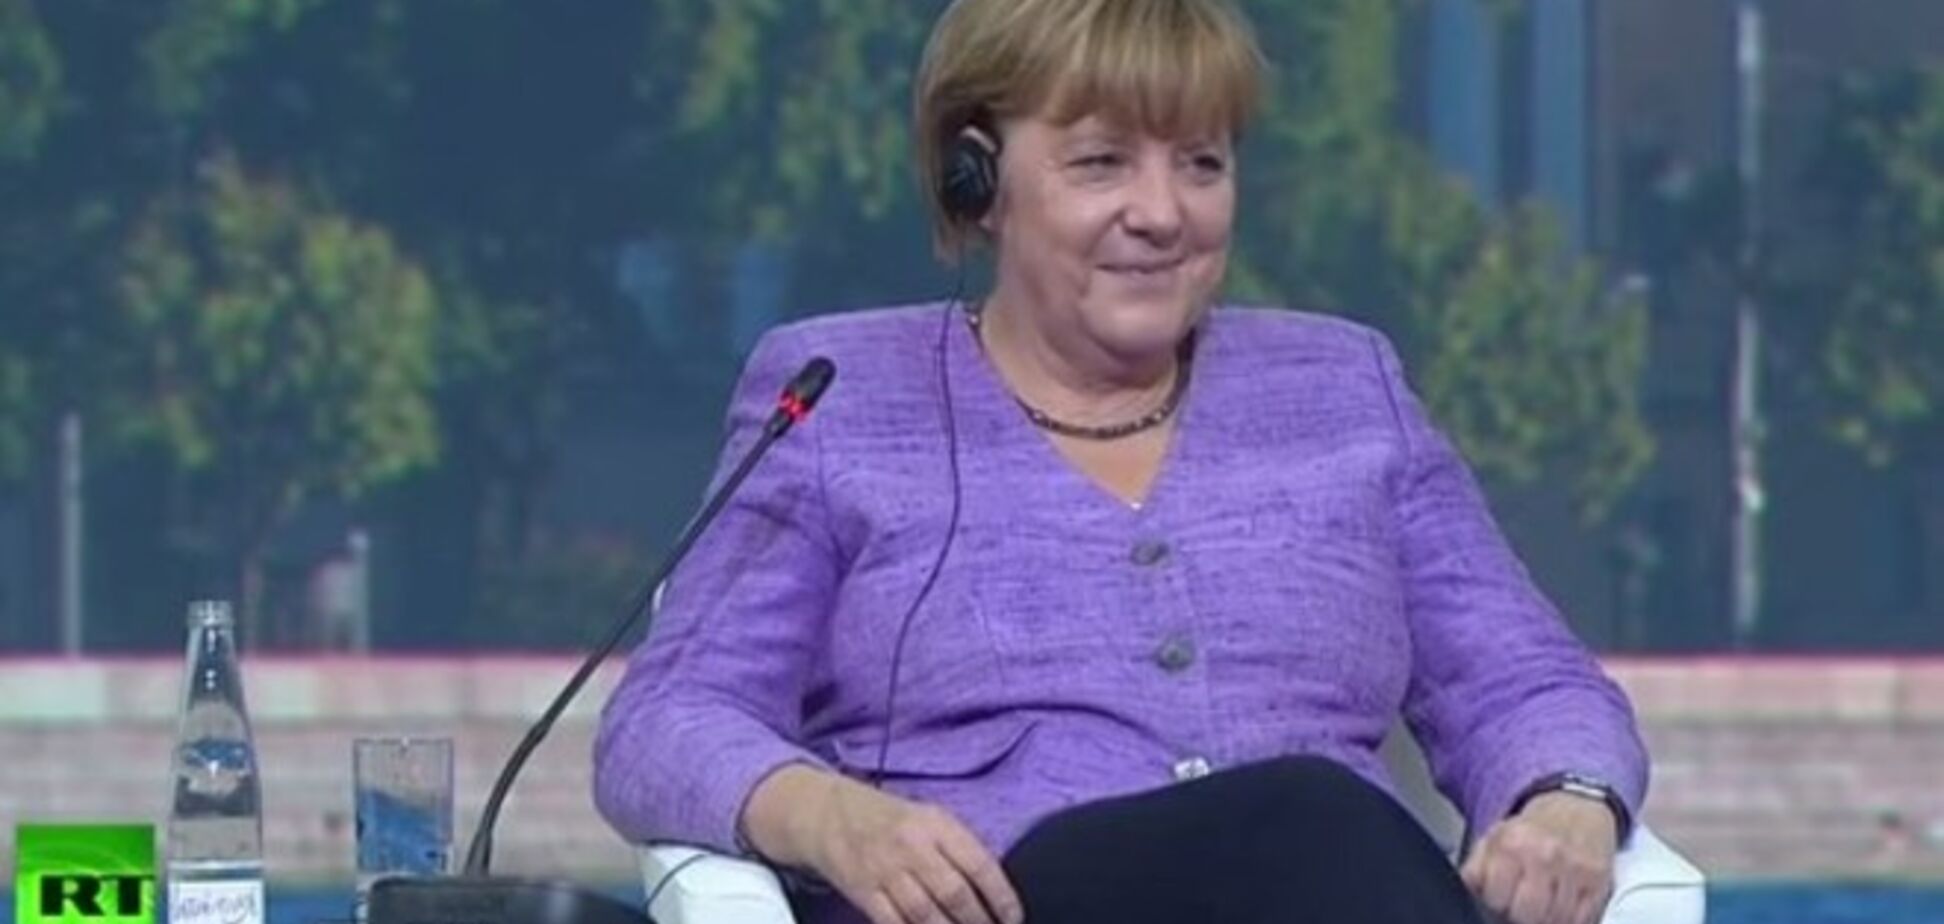 Відео погляду Меркель у відповідь на жарт Путіна виявилося монтажем: канцлер схвально посміхалася